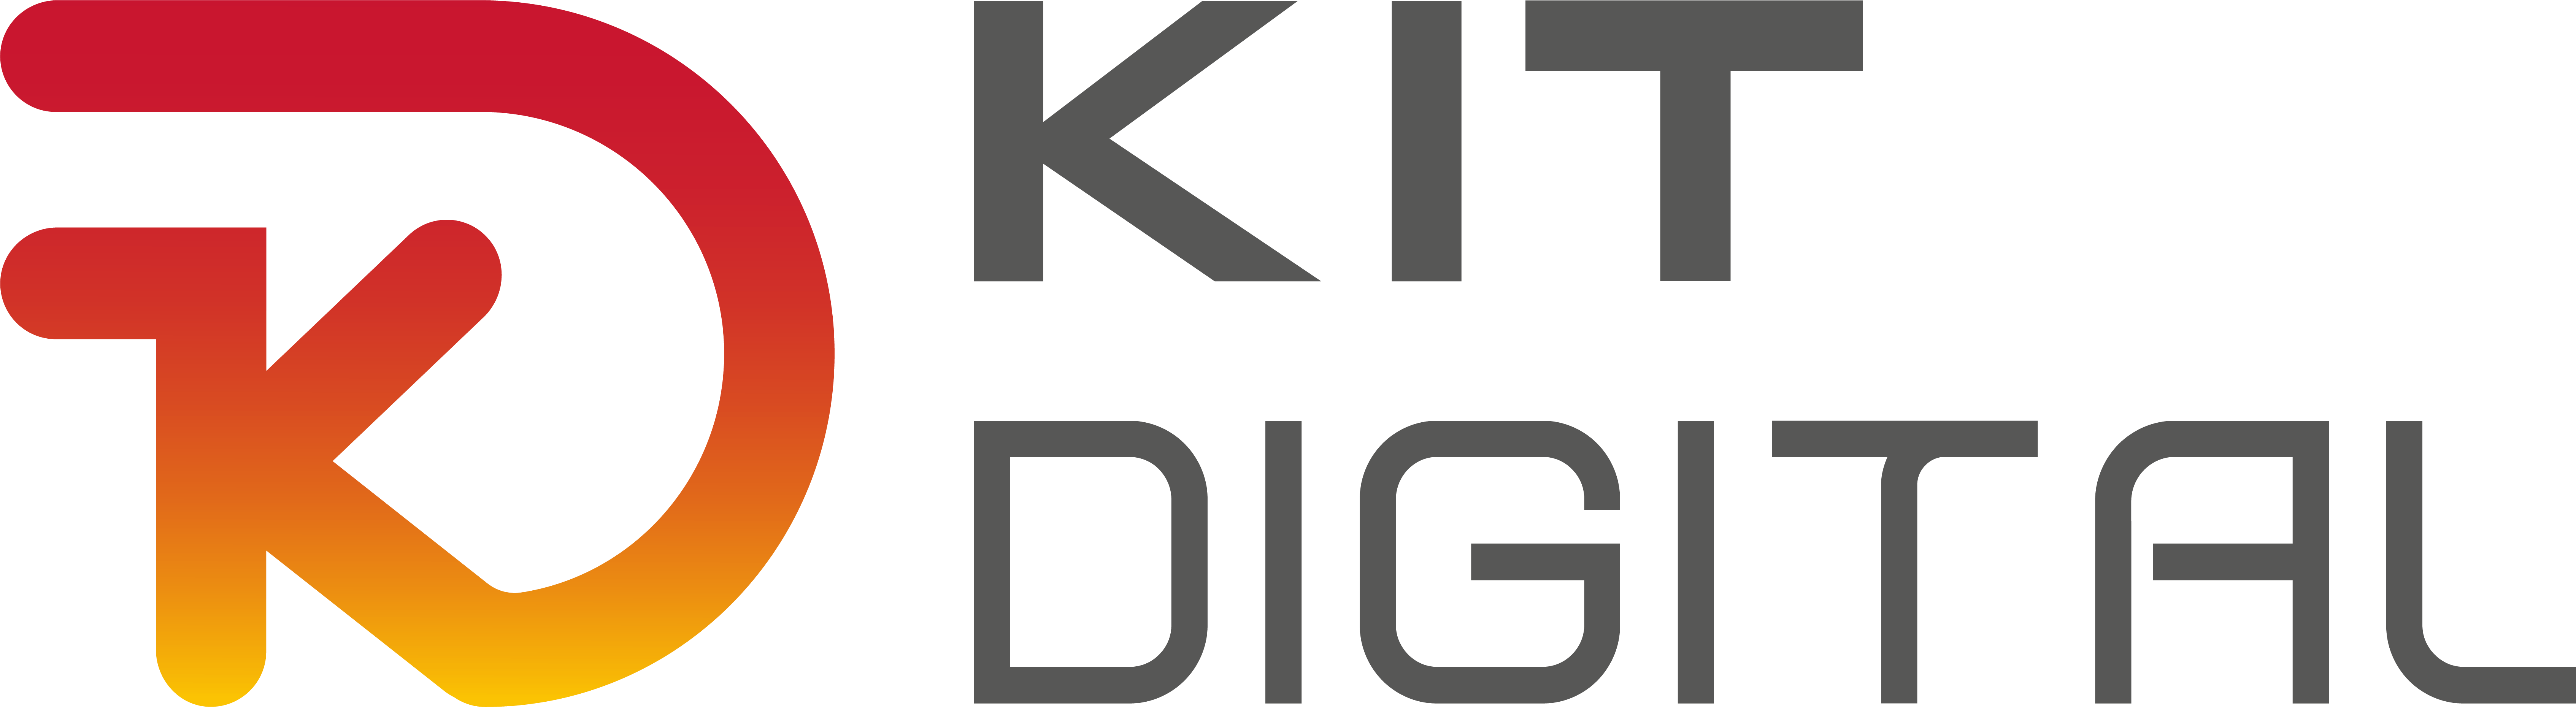 logo kit